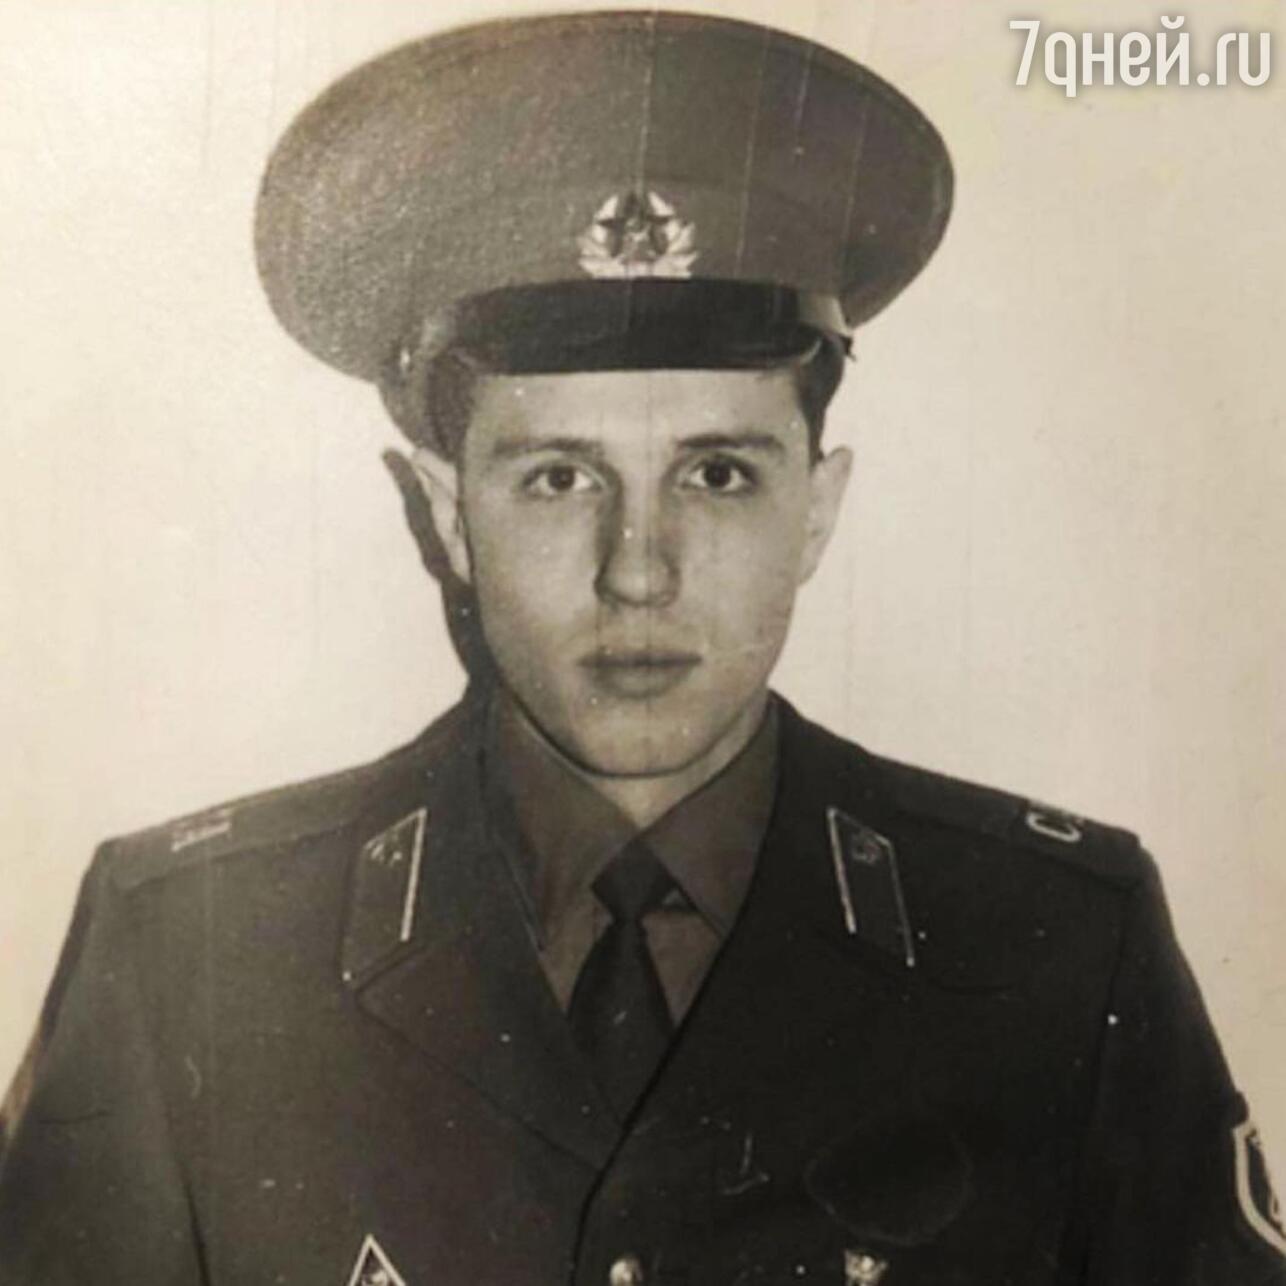 Сергей Зверев в молодости в армии - фотографии